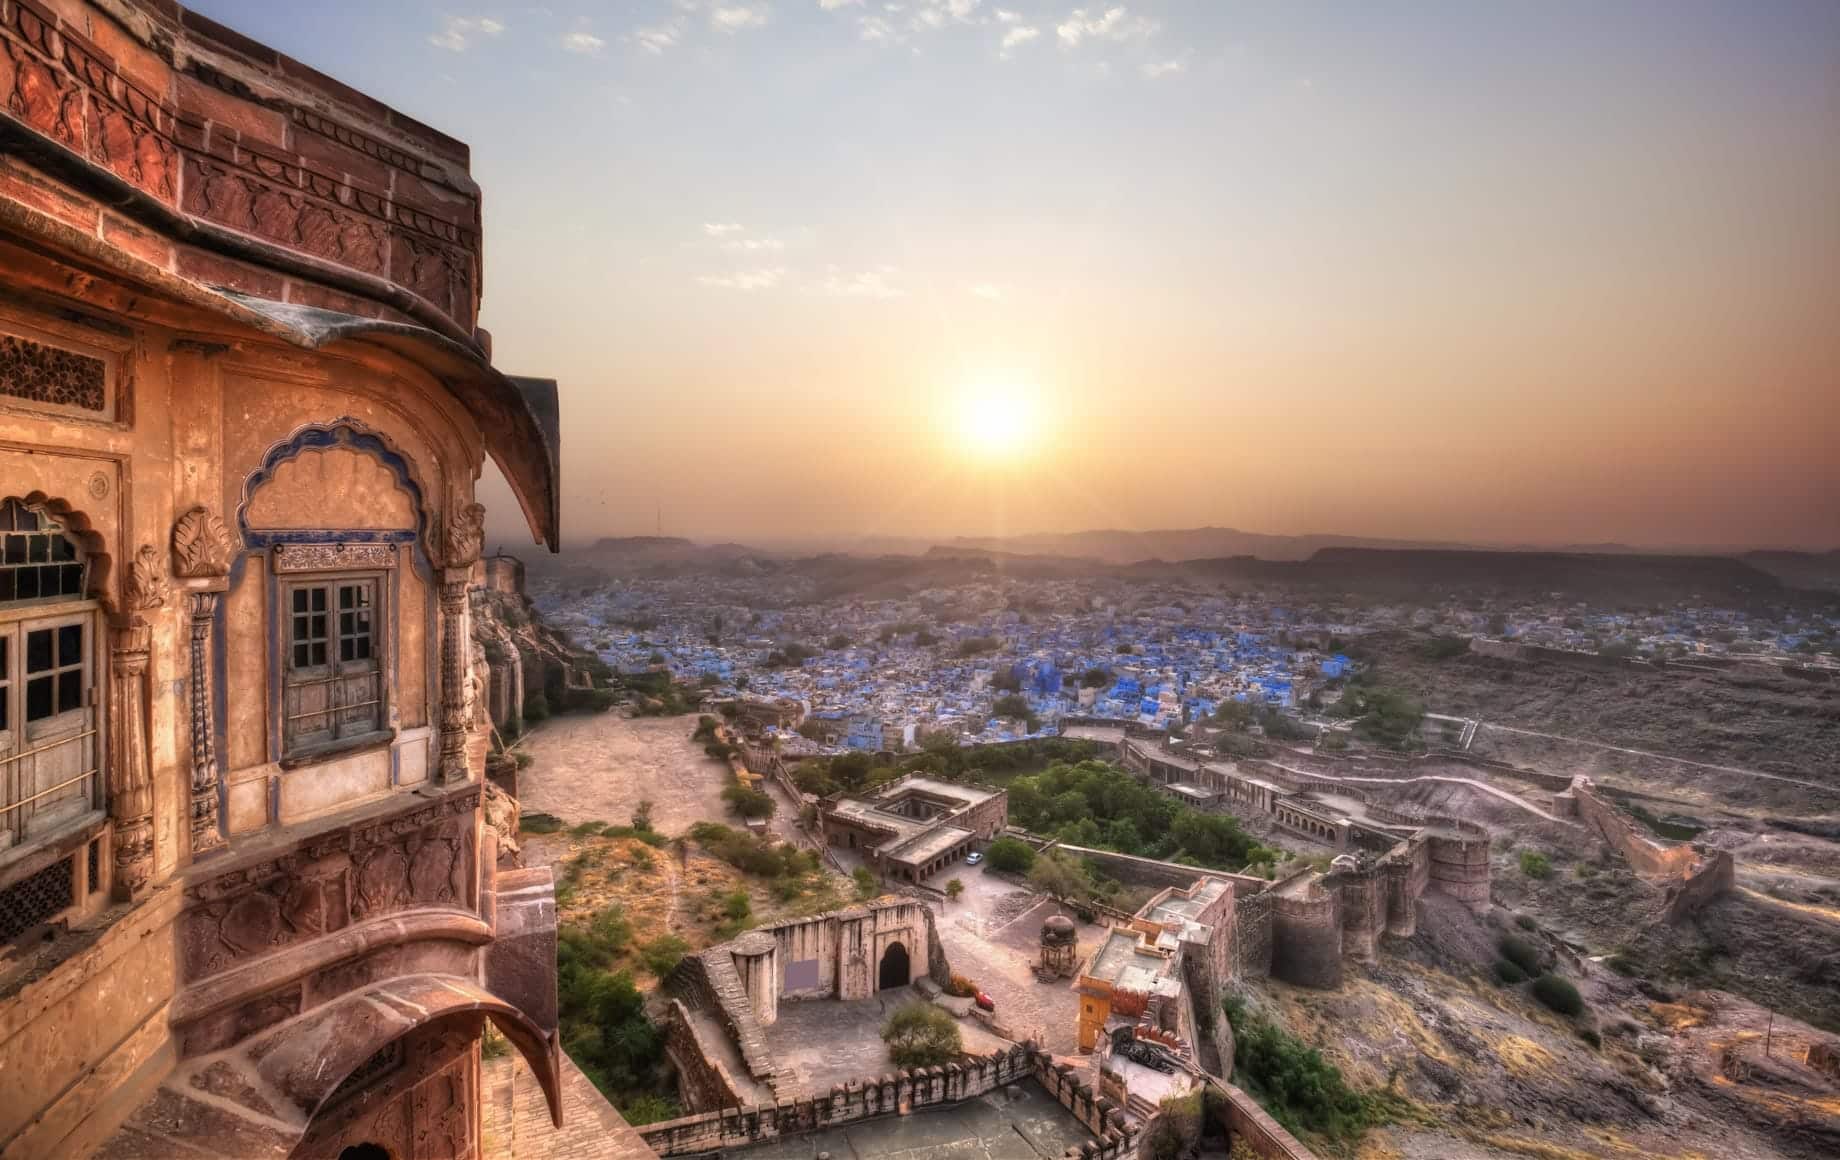 Sunset at Jodhpur, Rajasthan